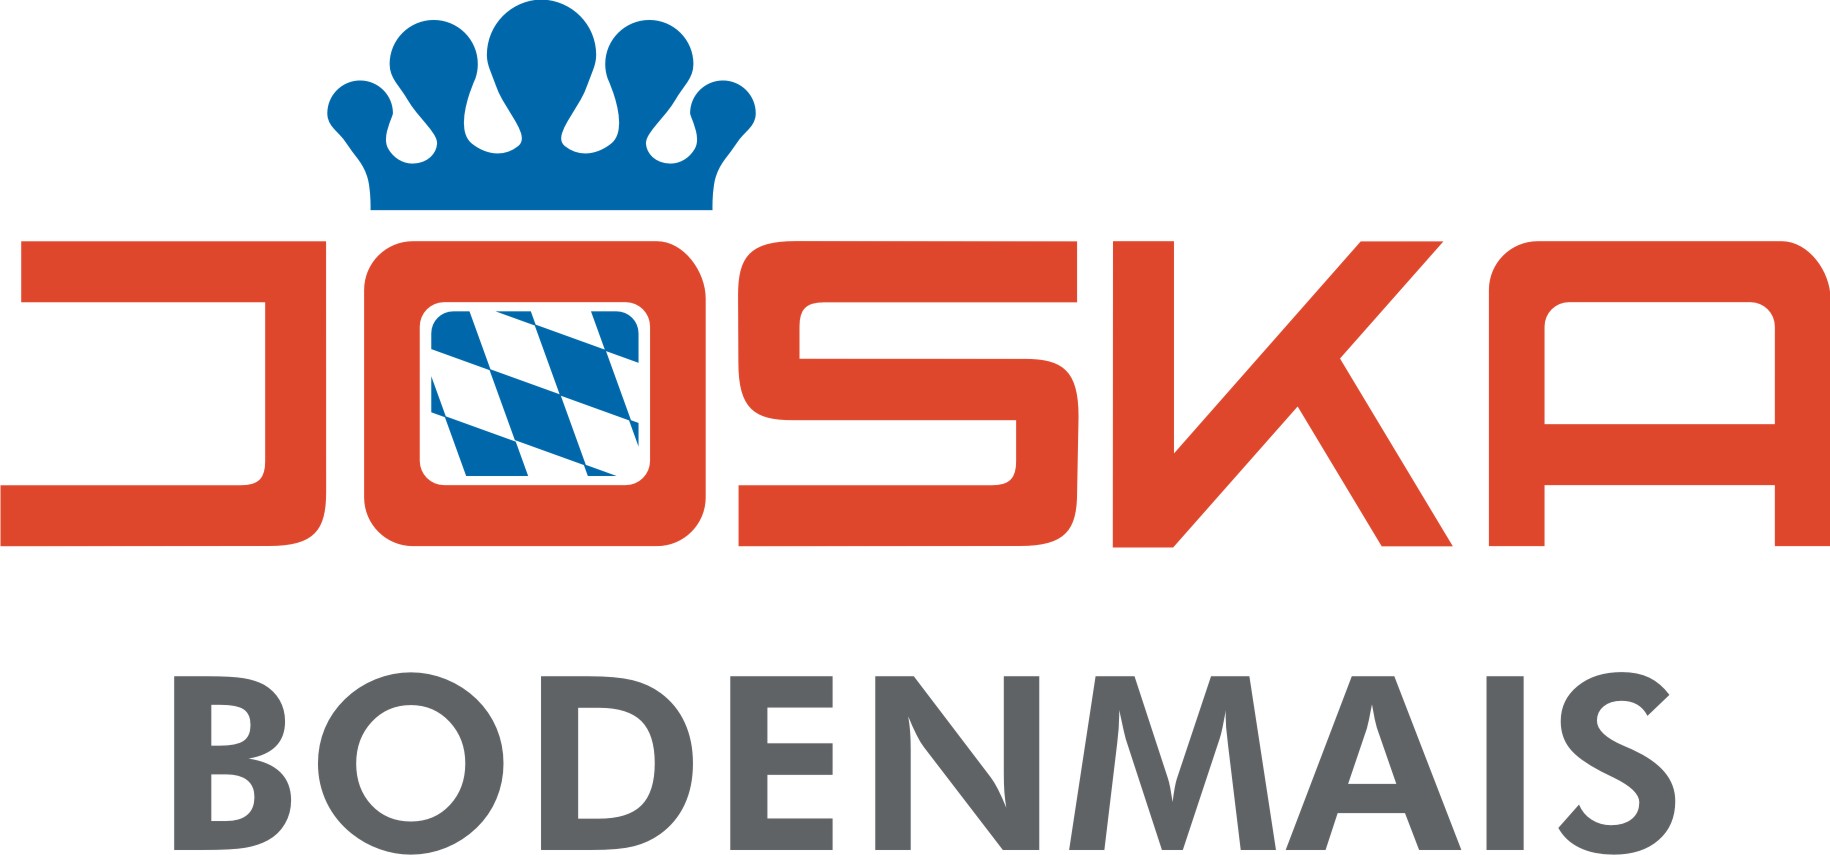 JOSKA Kristall GmbH & Co.KG